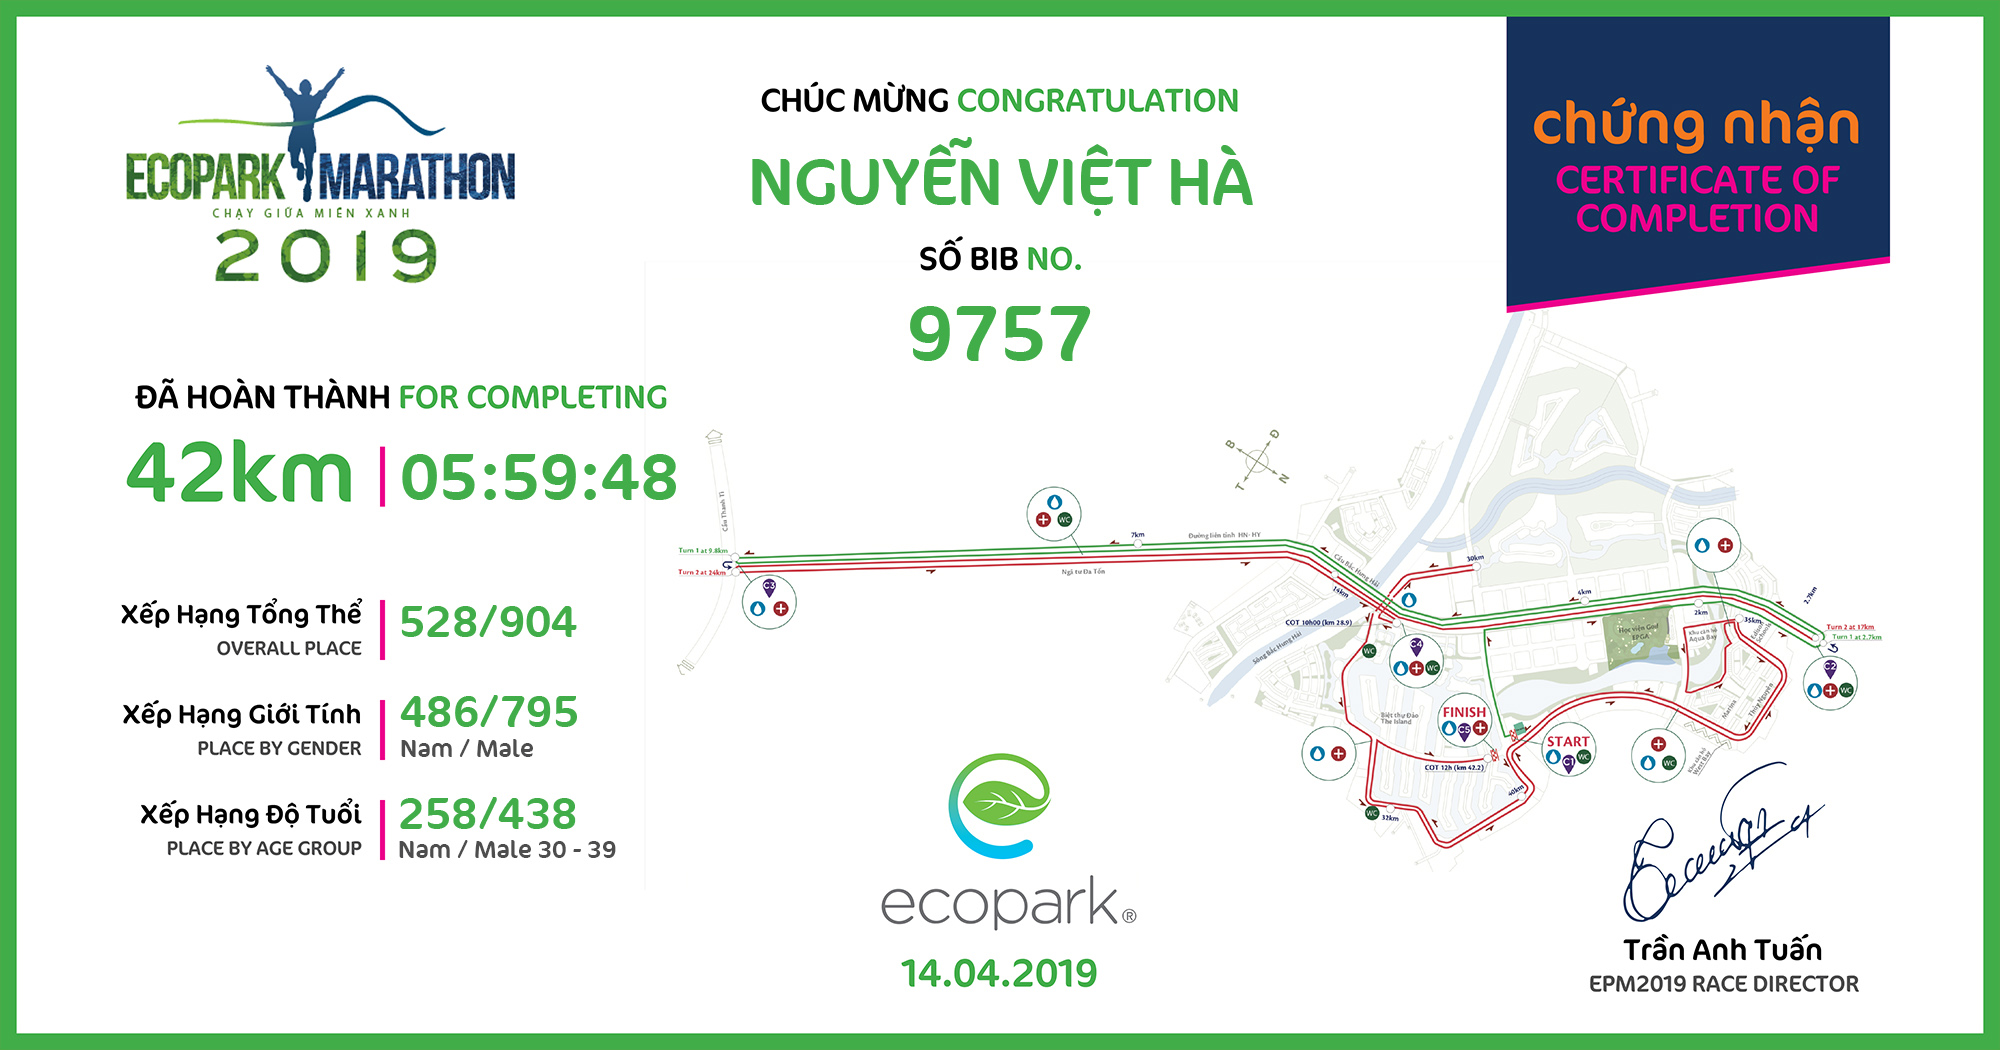 9757 - Nguyễn Việt Hà